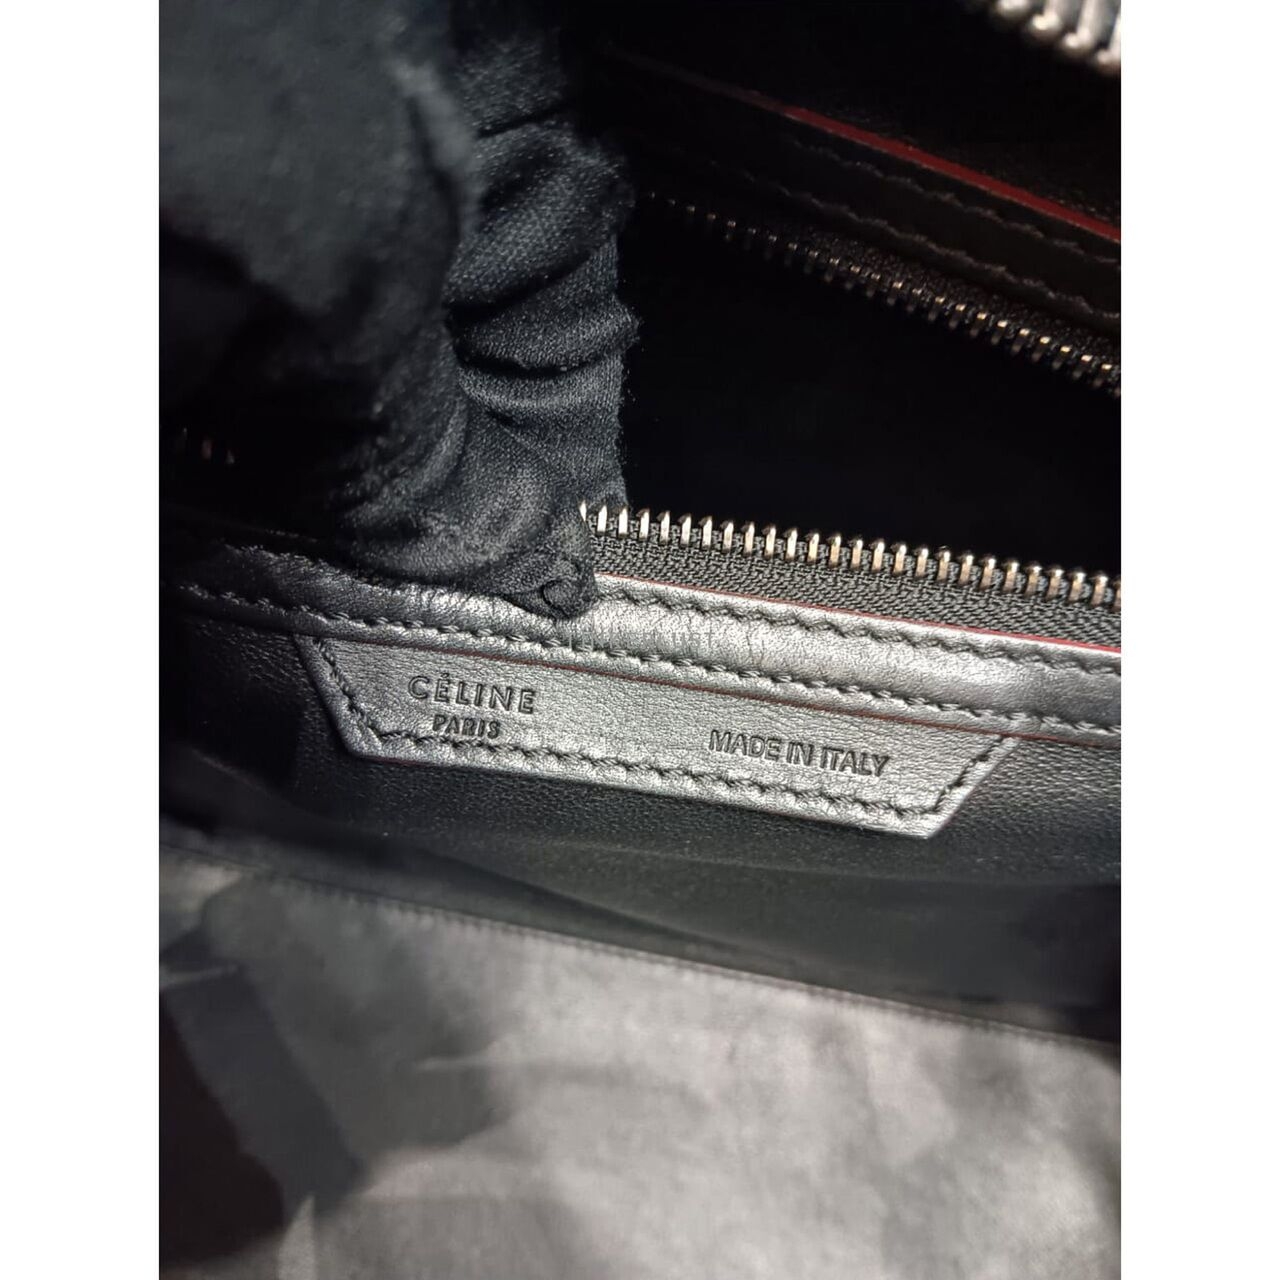 Celine Luggage Mini Black & Maroon 2012 Handbag	